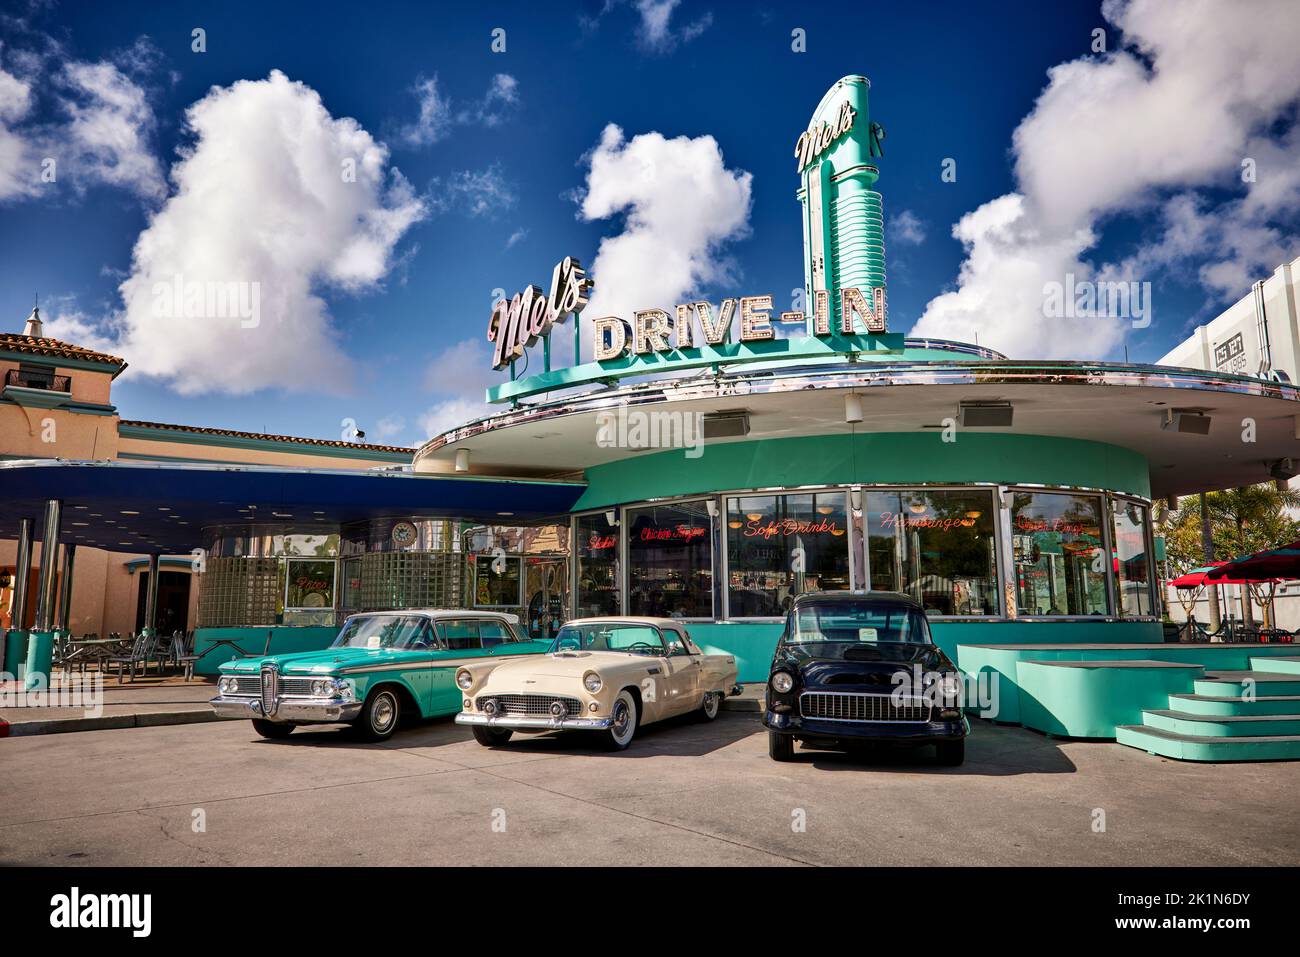 Universal Studios Florida parc à thème Mels conduire dans un café avec des voitures classiques américaines des années 1960 Banque D'Images